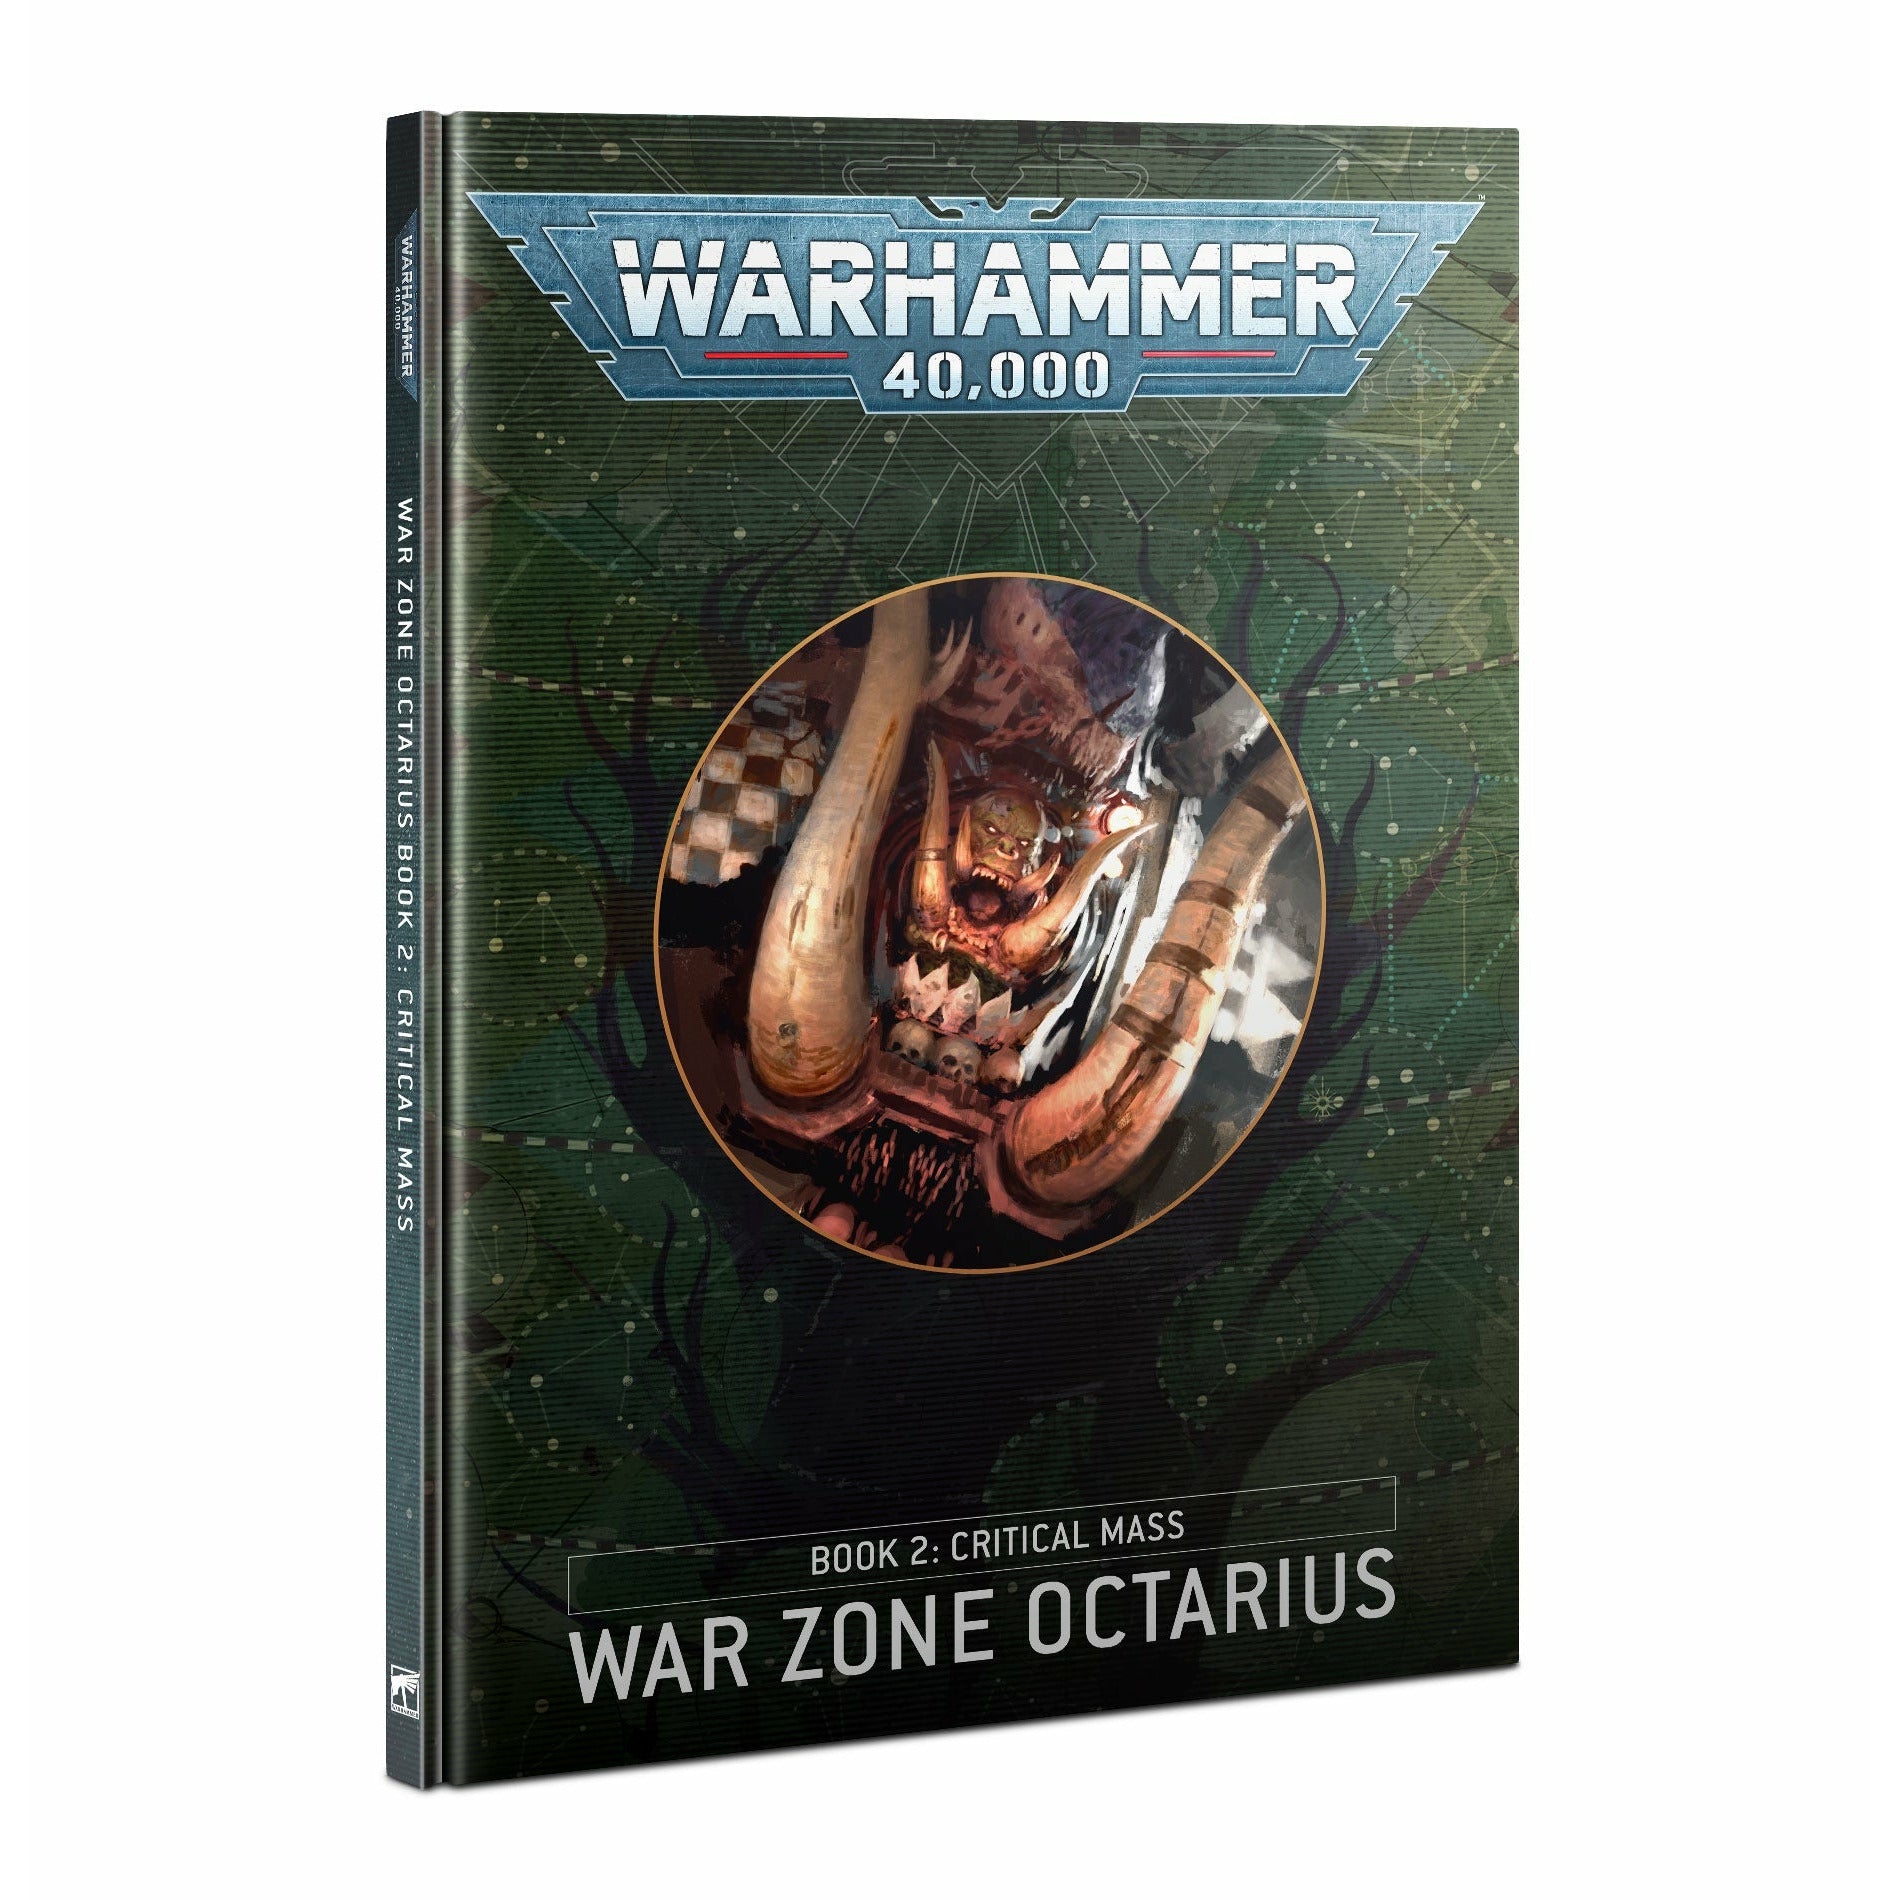 War Zone Octarius: Book 2 Critical Mass